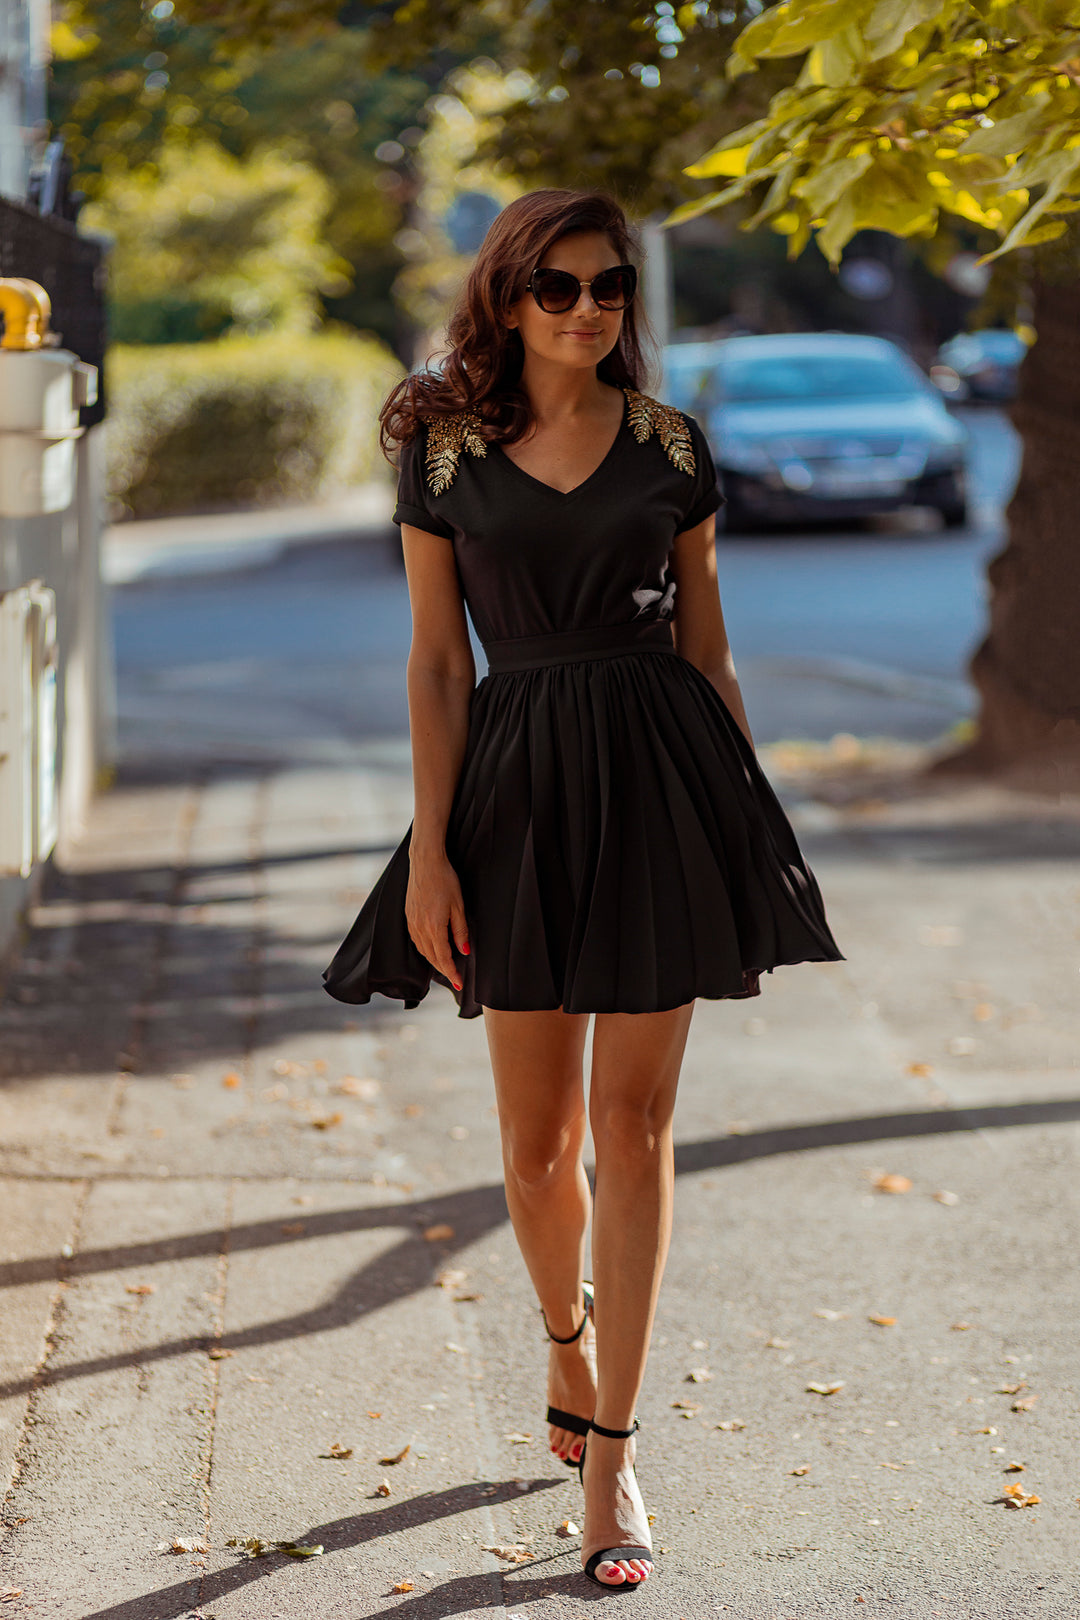 Black Short Pleated Crepe Skirt